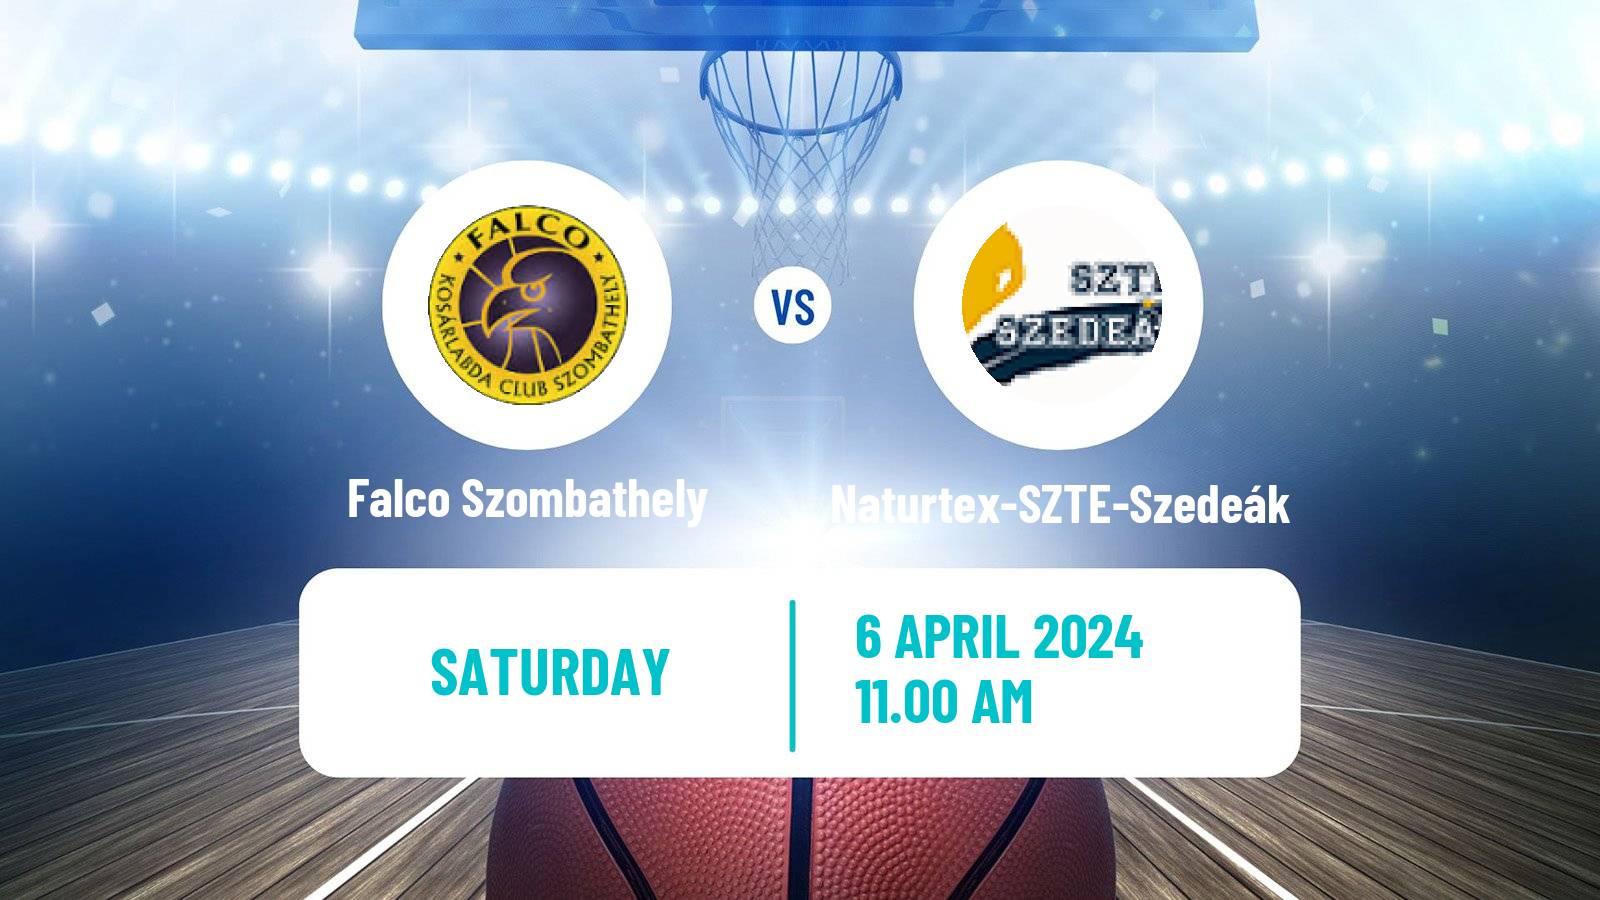 Basketball Hungarian Cup Basketball Falco Szombathely - Naturtex-SZTE-Szedeák